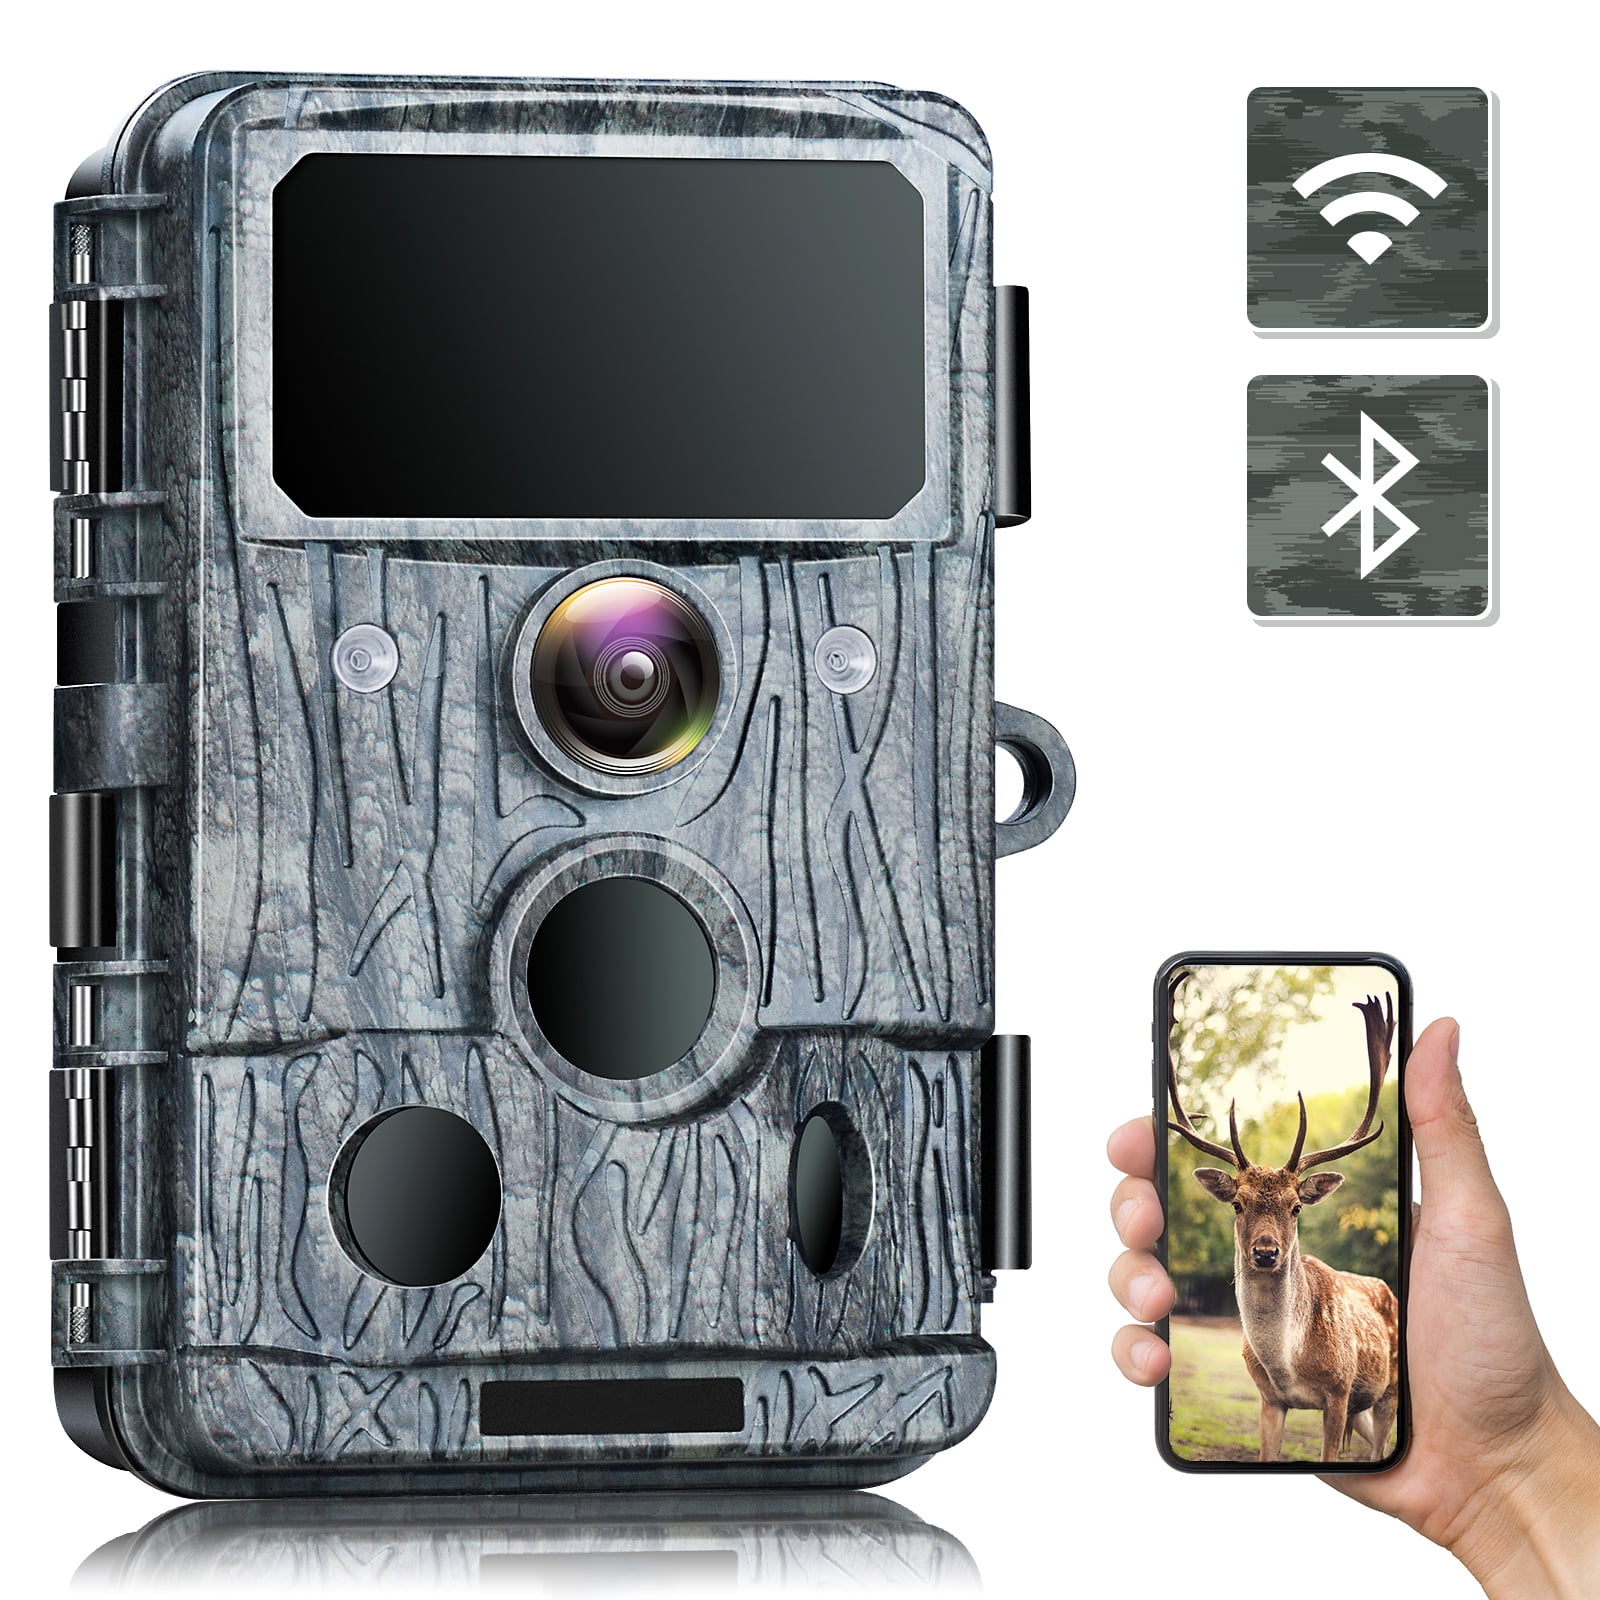 TOGUARD 4K/30fps WIFI Video Cámara Trail Caza Bluetooth juego Cam de visión nocturna 